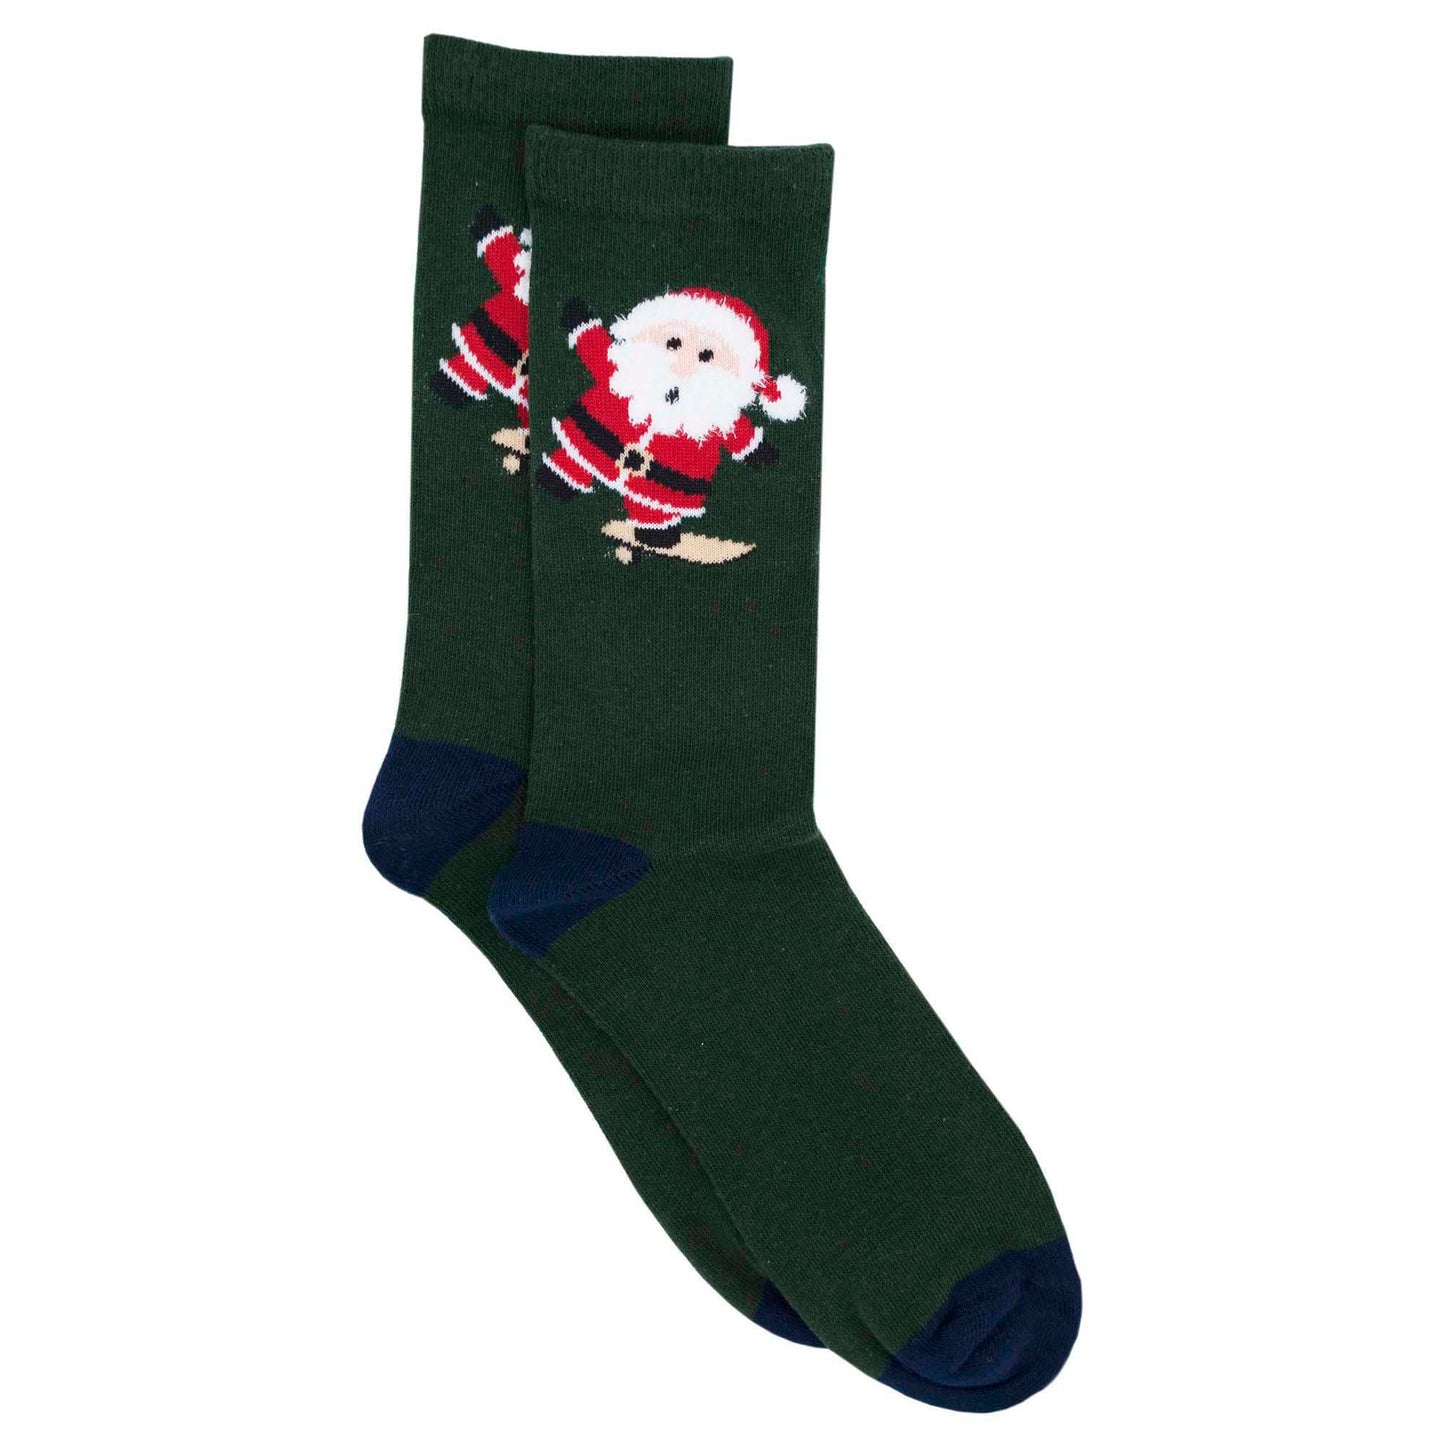 Men's Christmas Novelty 12 Pack Cotton Socks Uk 7-11 Eur 41-46